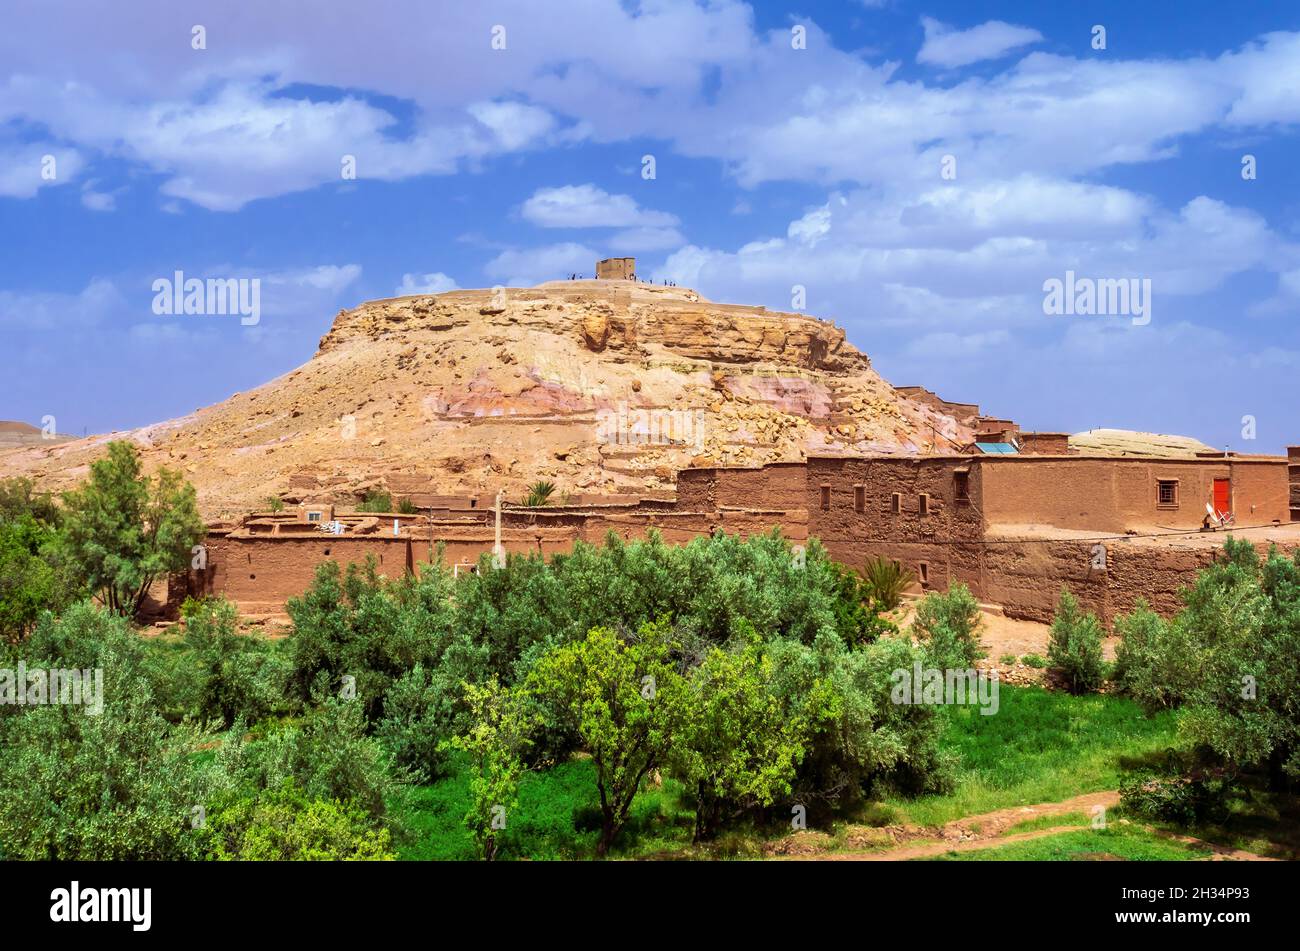 La ciudad de Ouarzazate, llamada 'la puerta del desierto', el destino turístico más famoso de Marruecos Foto de stock